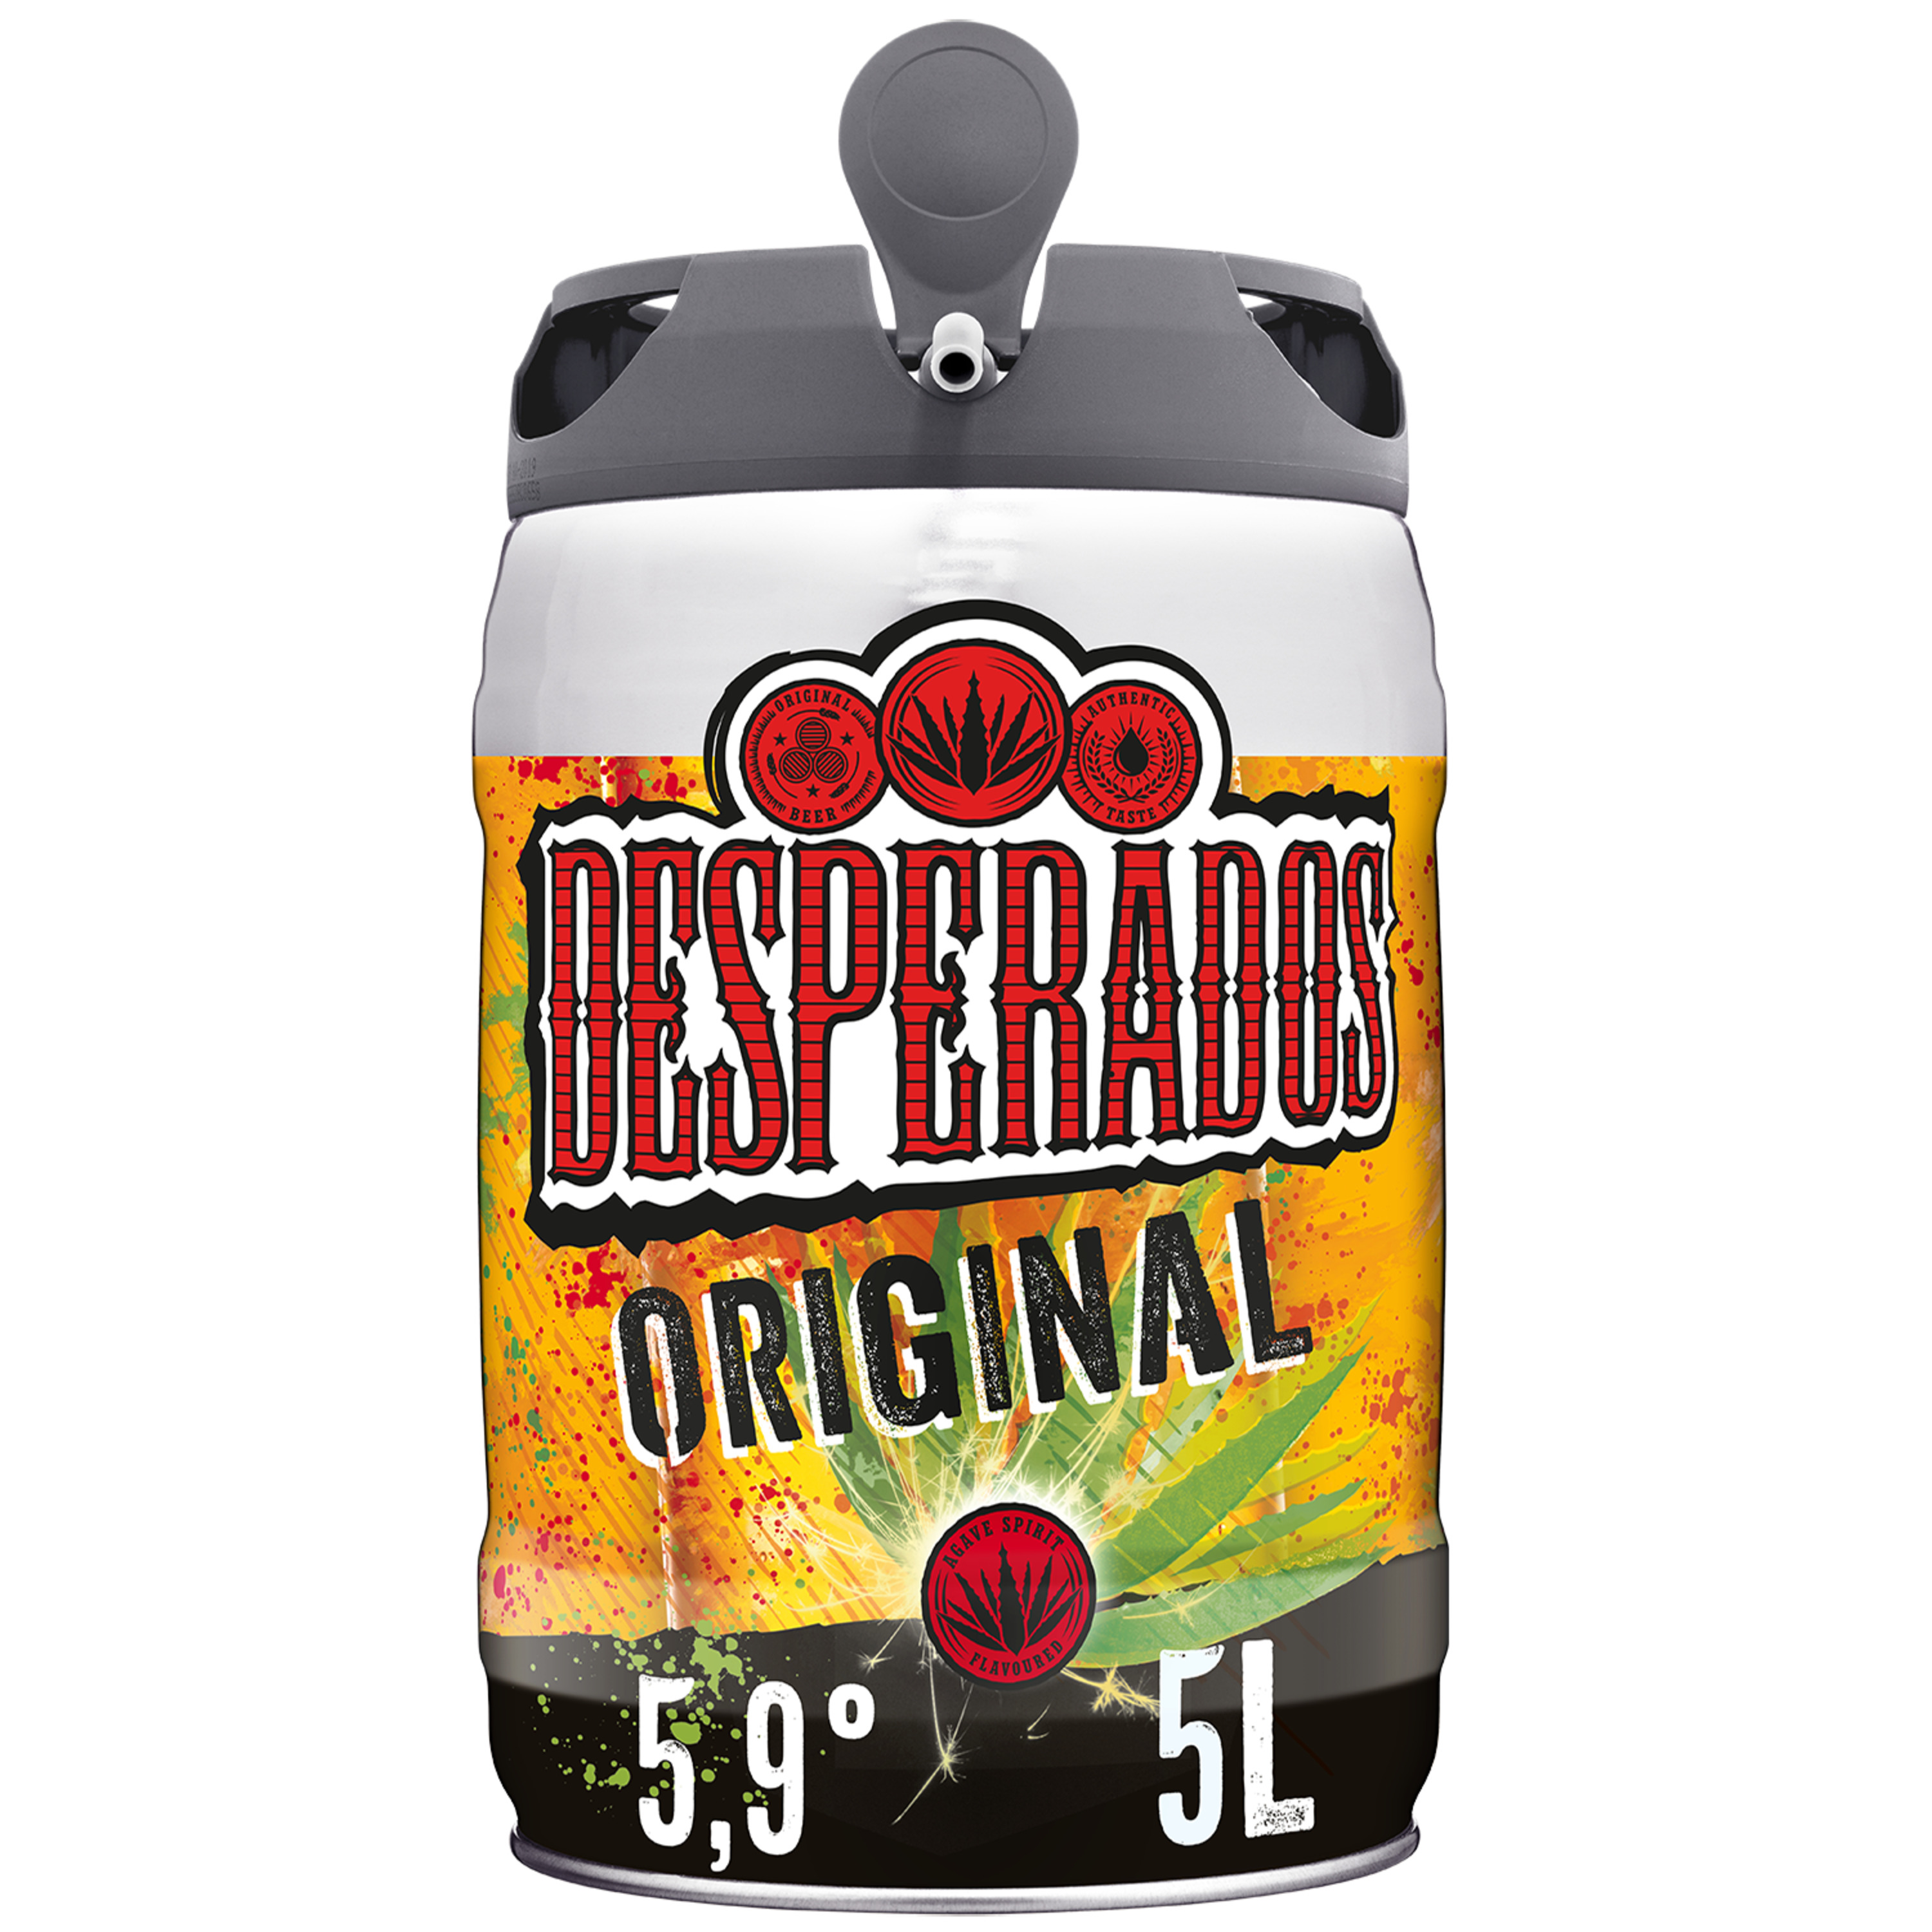 Desperados - Fût de 5L, Achat bière en ligne